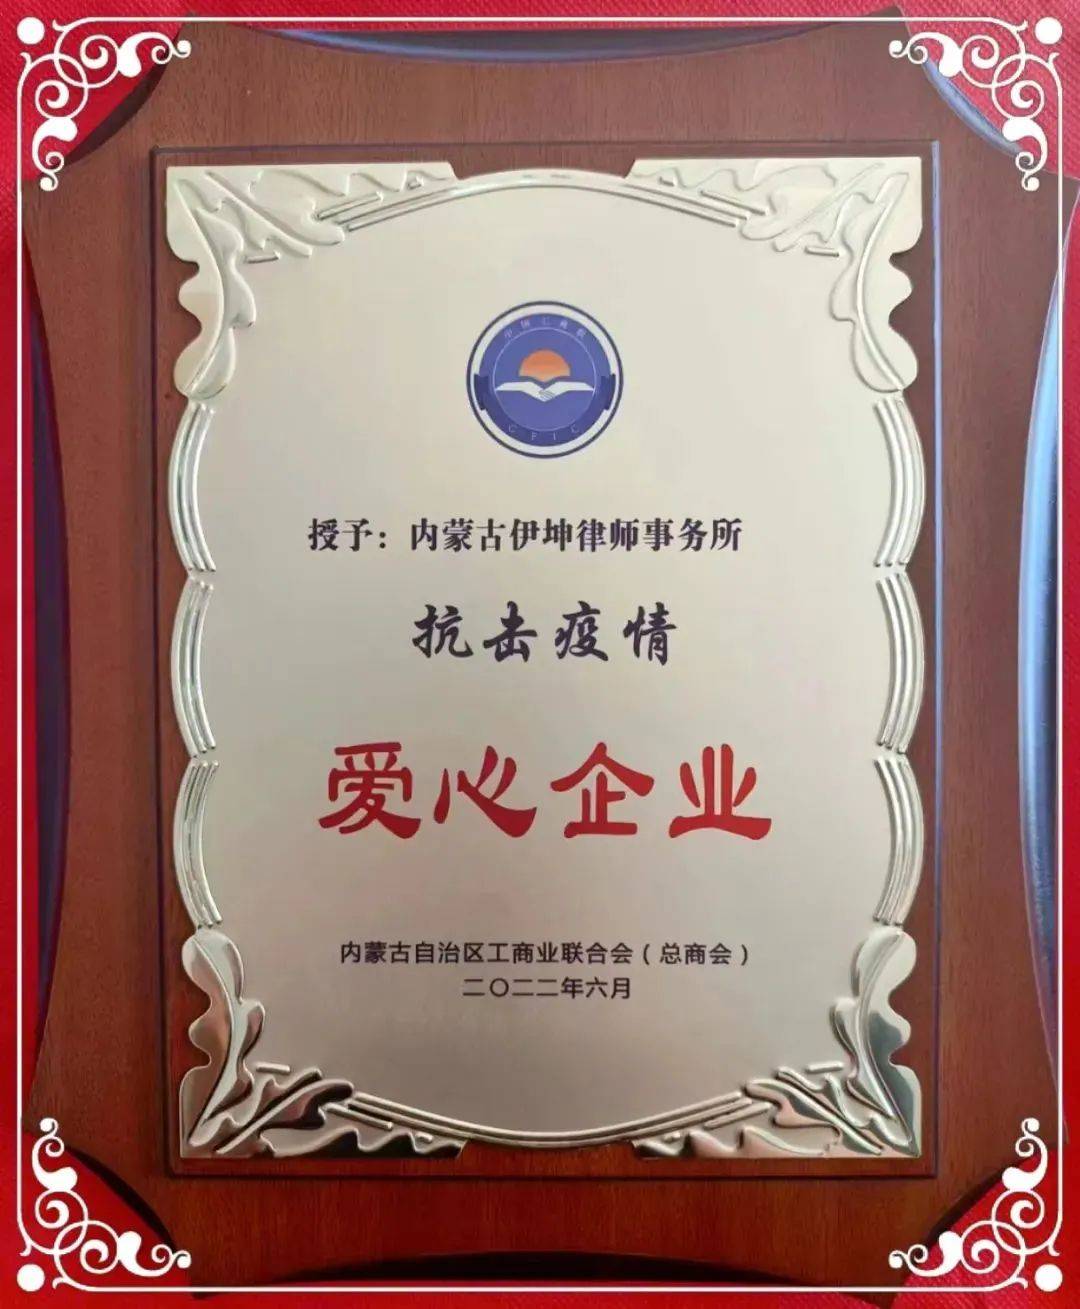 内蒙古伊坤律师事务所被授予“抗击疫情 爱心企业”荣誉称号